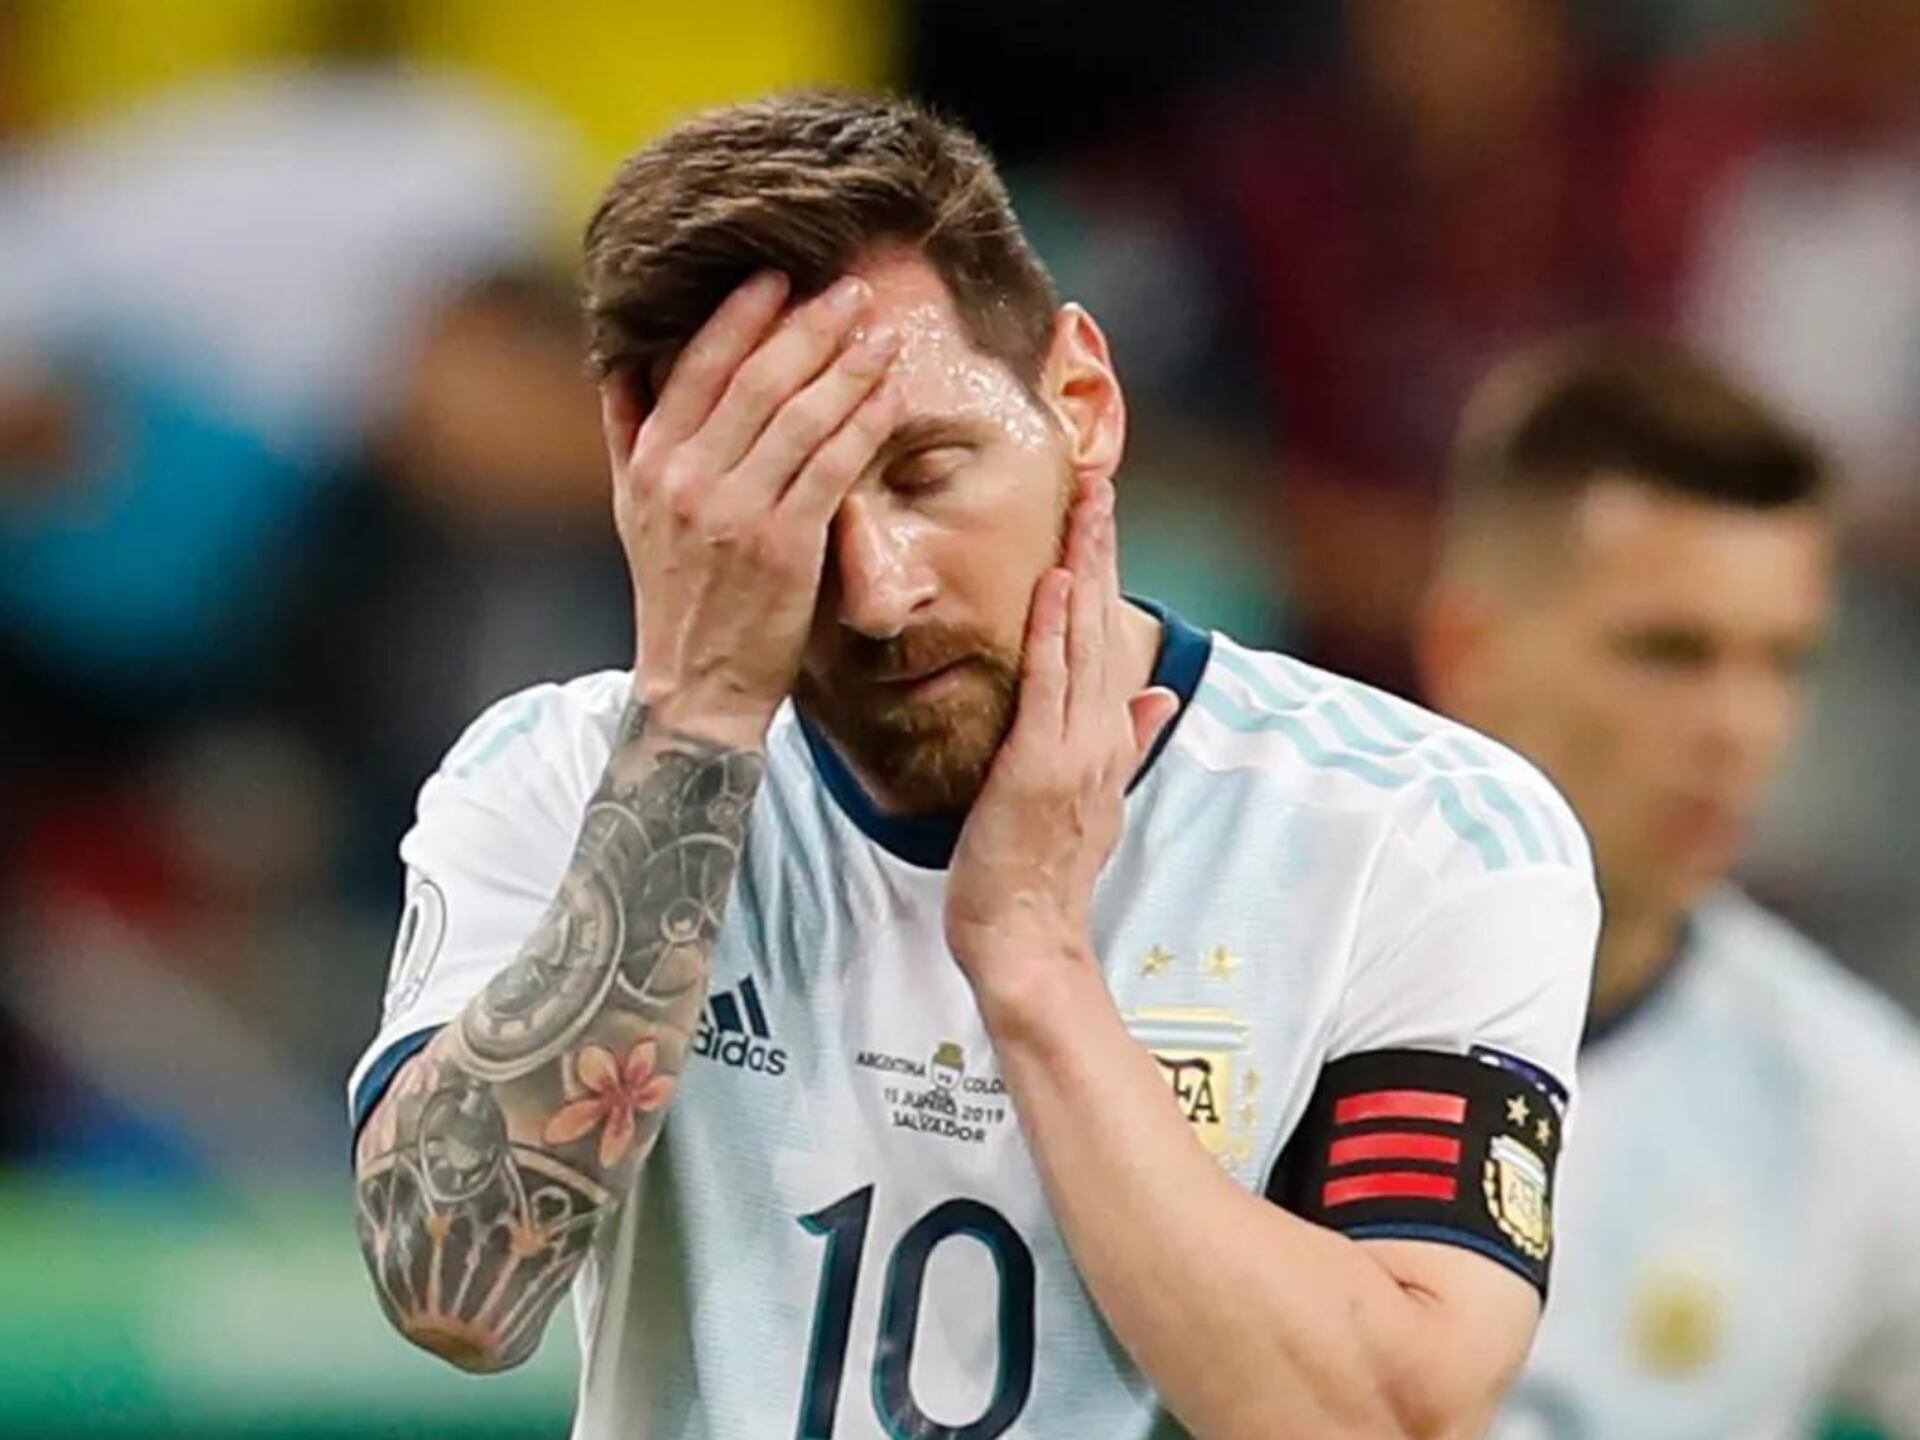 Conmoción y tristeza absoluta, las respuestas de la prensa ante la foto de Messi